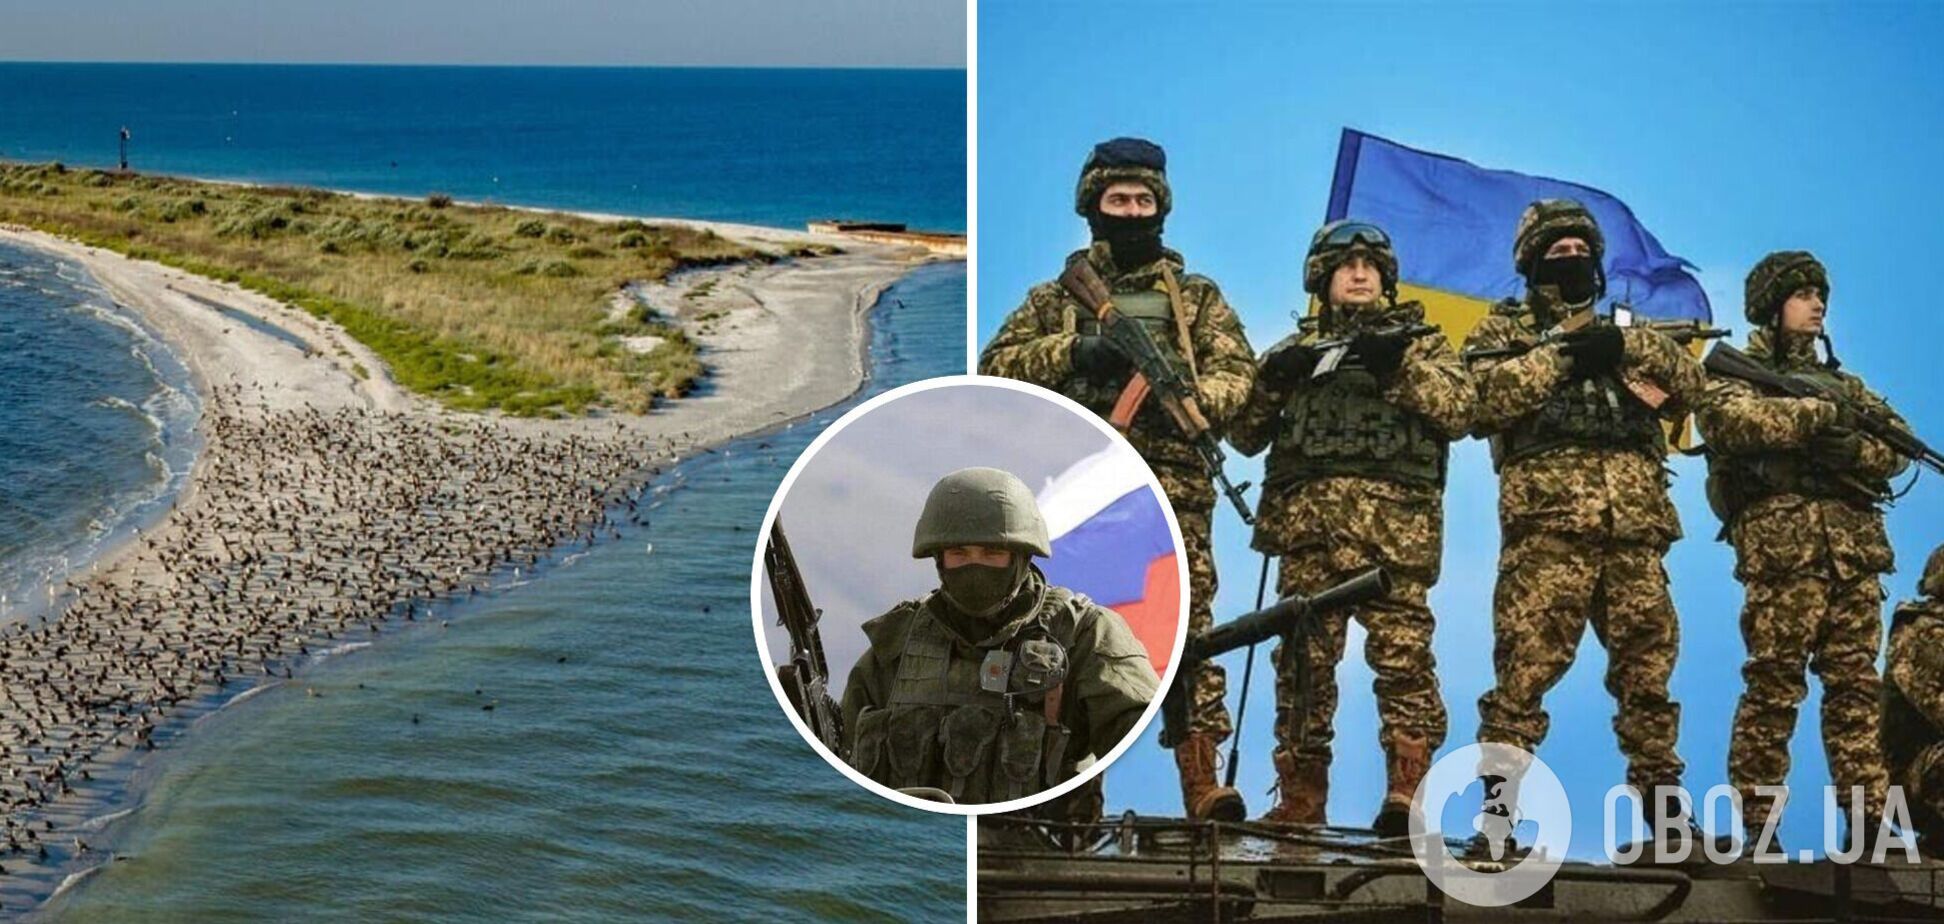 Кінбурнська коса, де йде операція ЗСУ, має стратегічне значення для подальшої деокупації півдня України – ISW